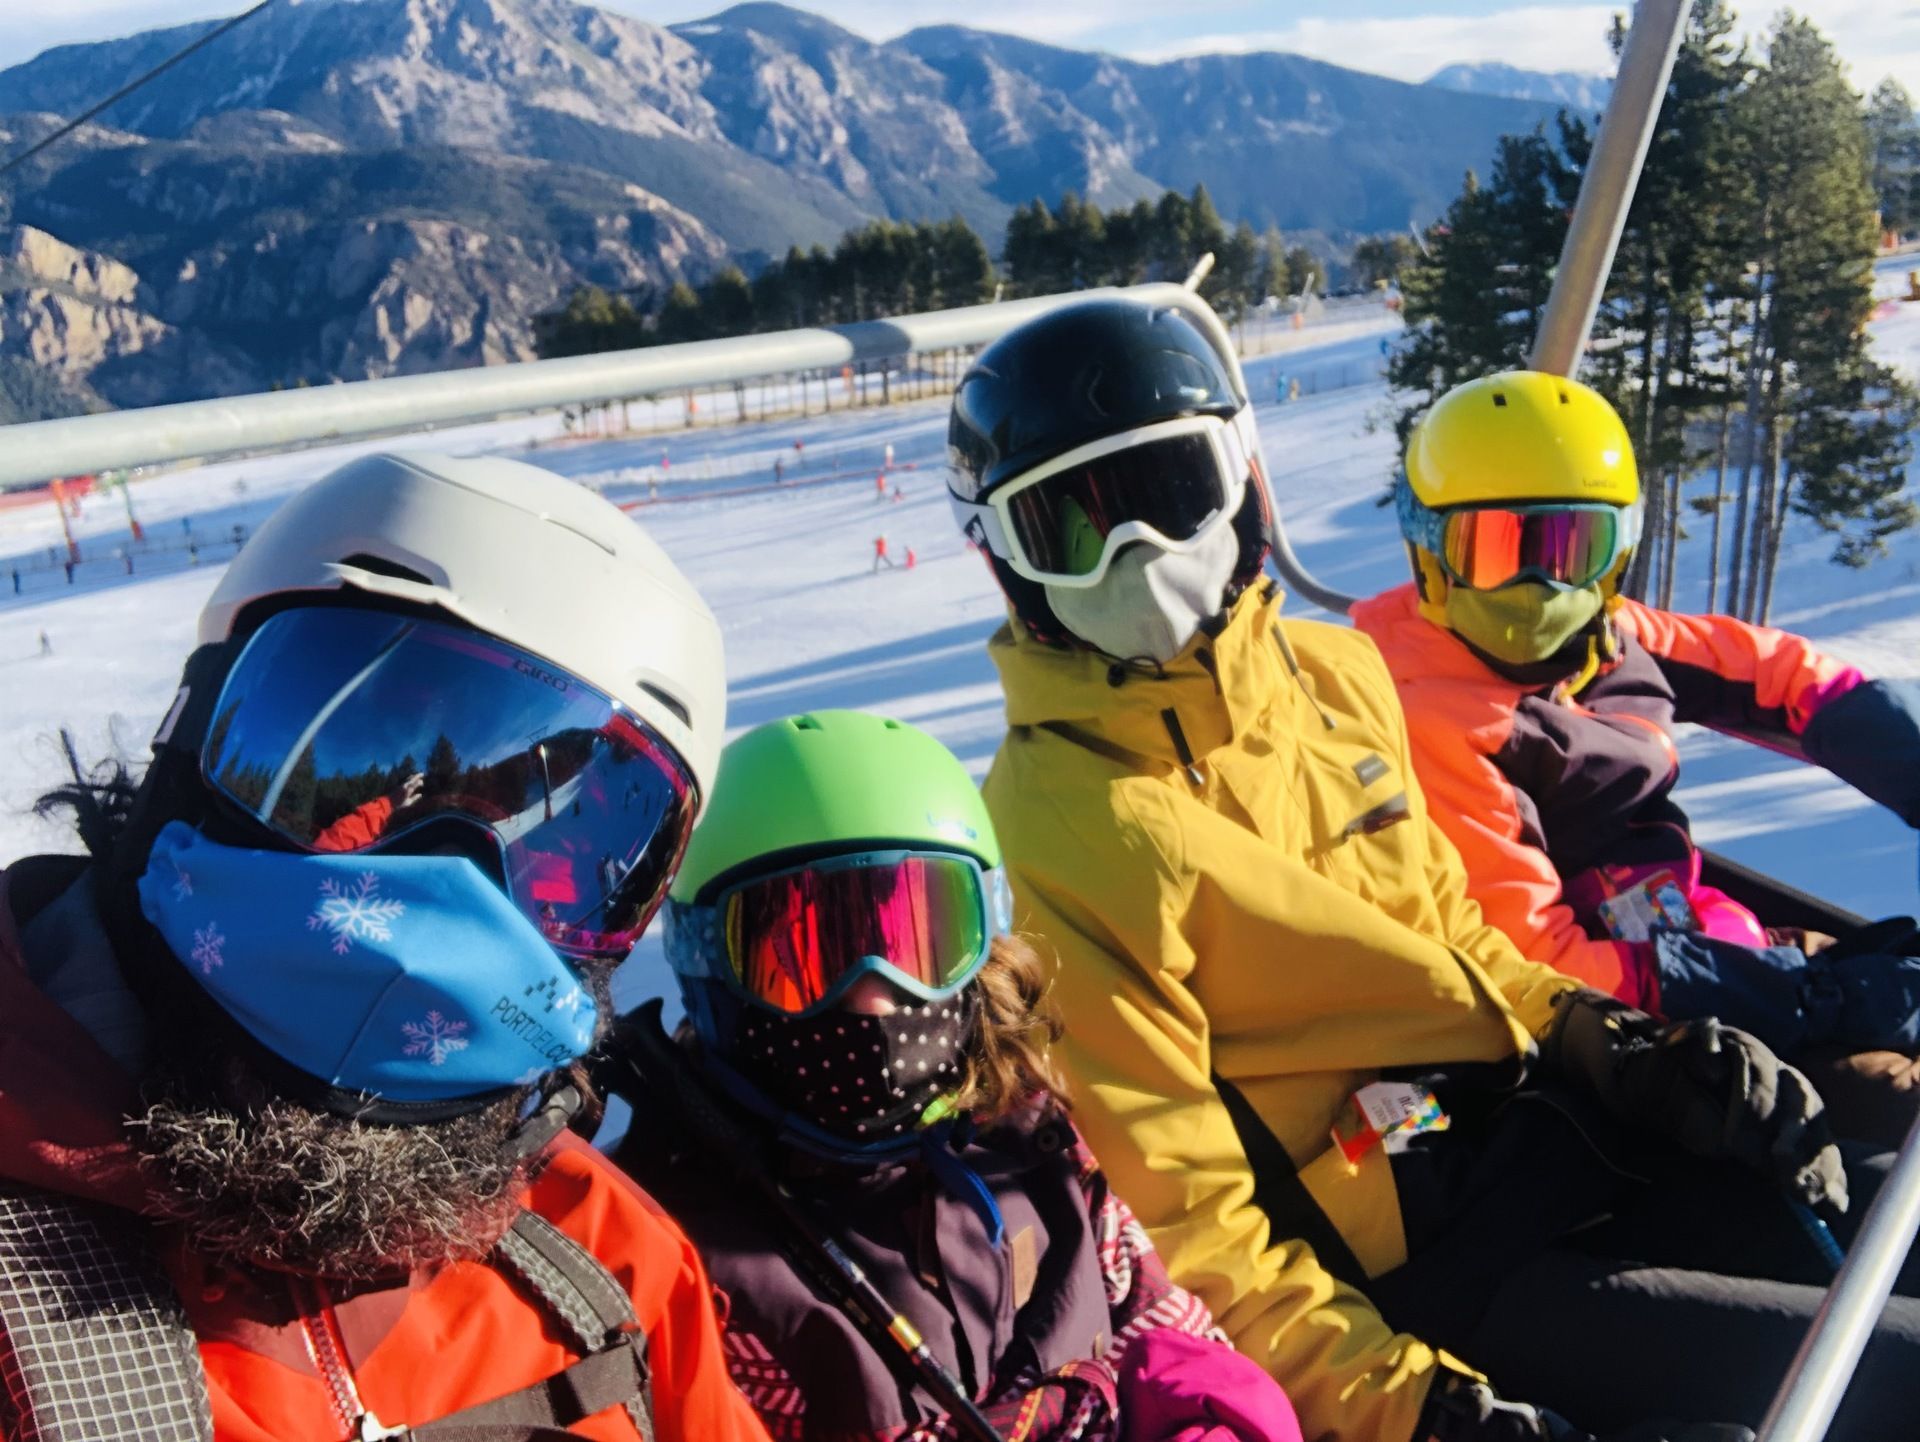 Ir a esquiar con niños - Ferran&Pow - Nevasport.com